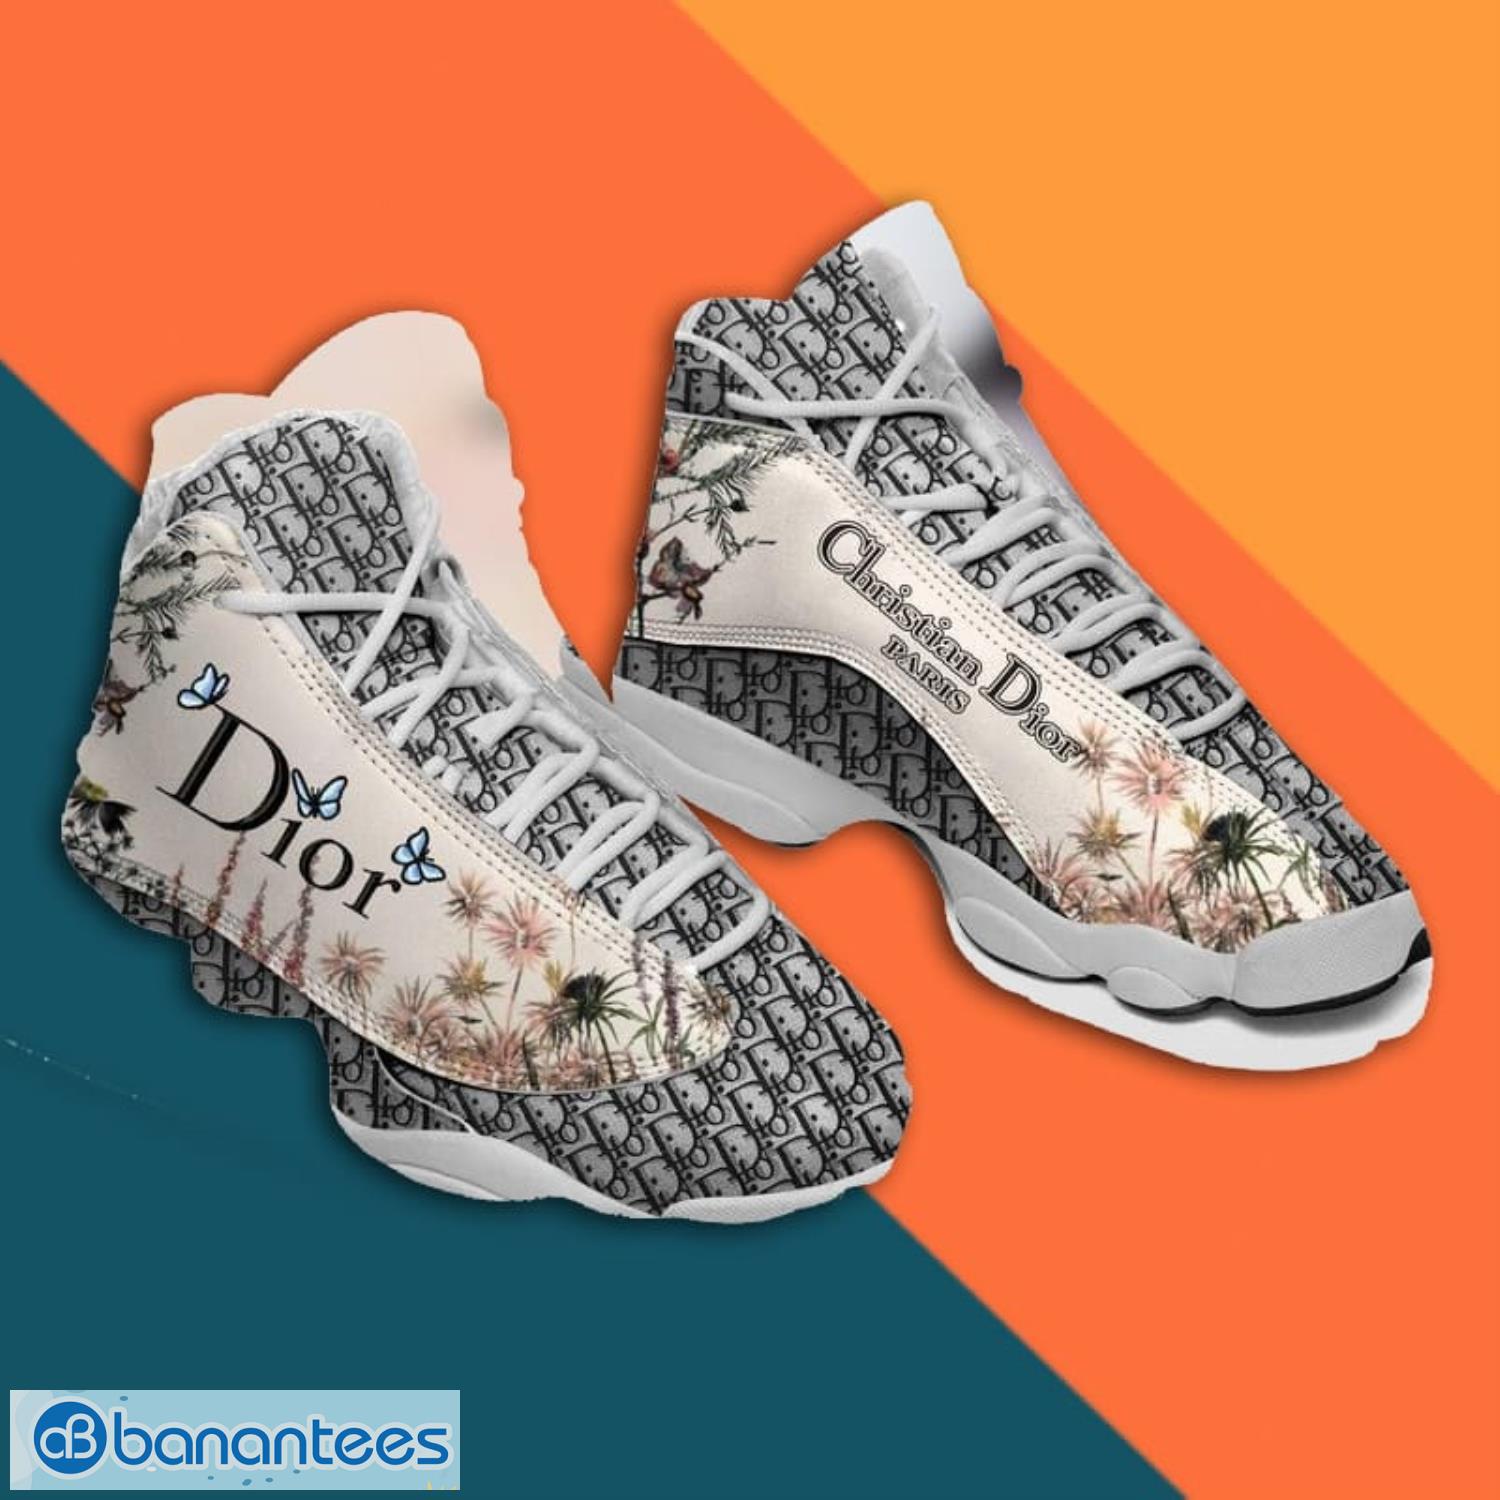 Dior Air Jordan 13 Sneaker Shoes - Banantees